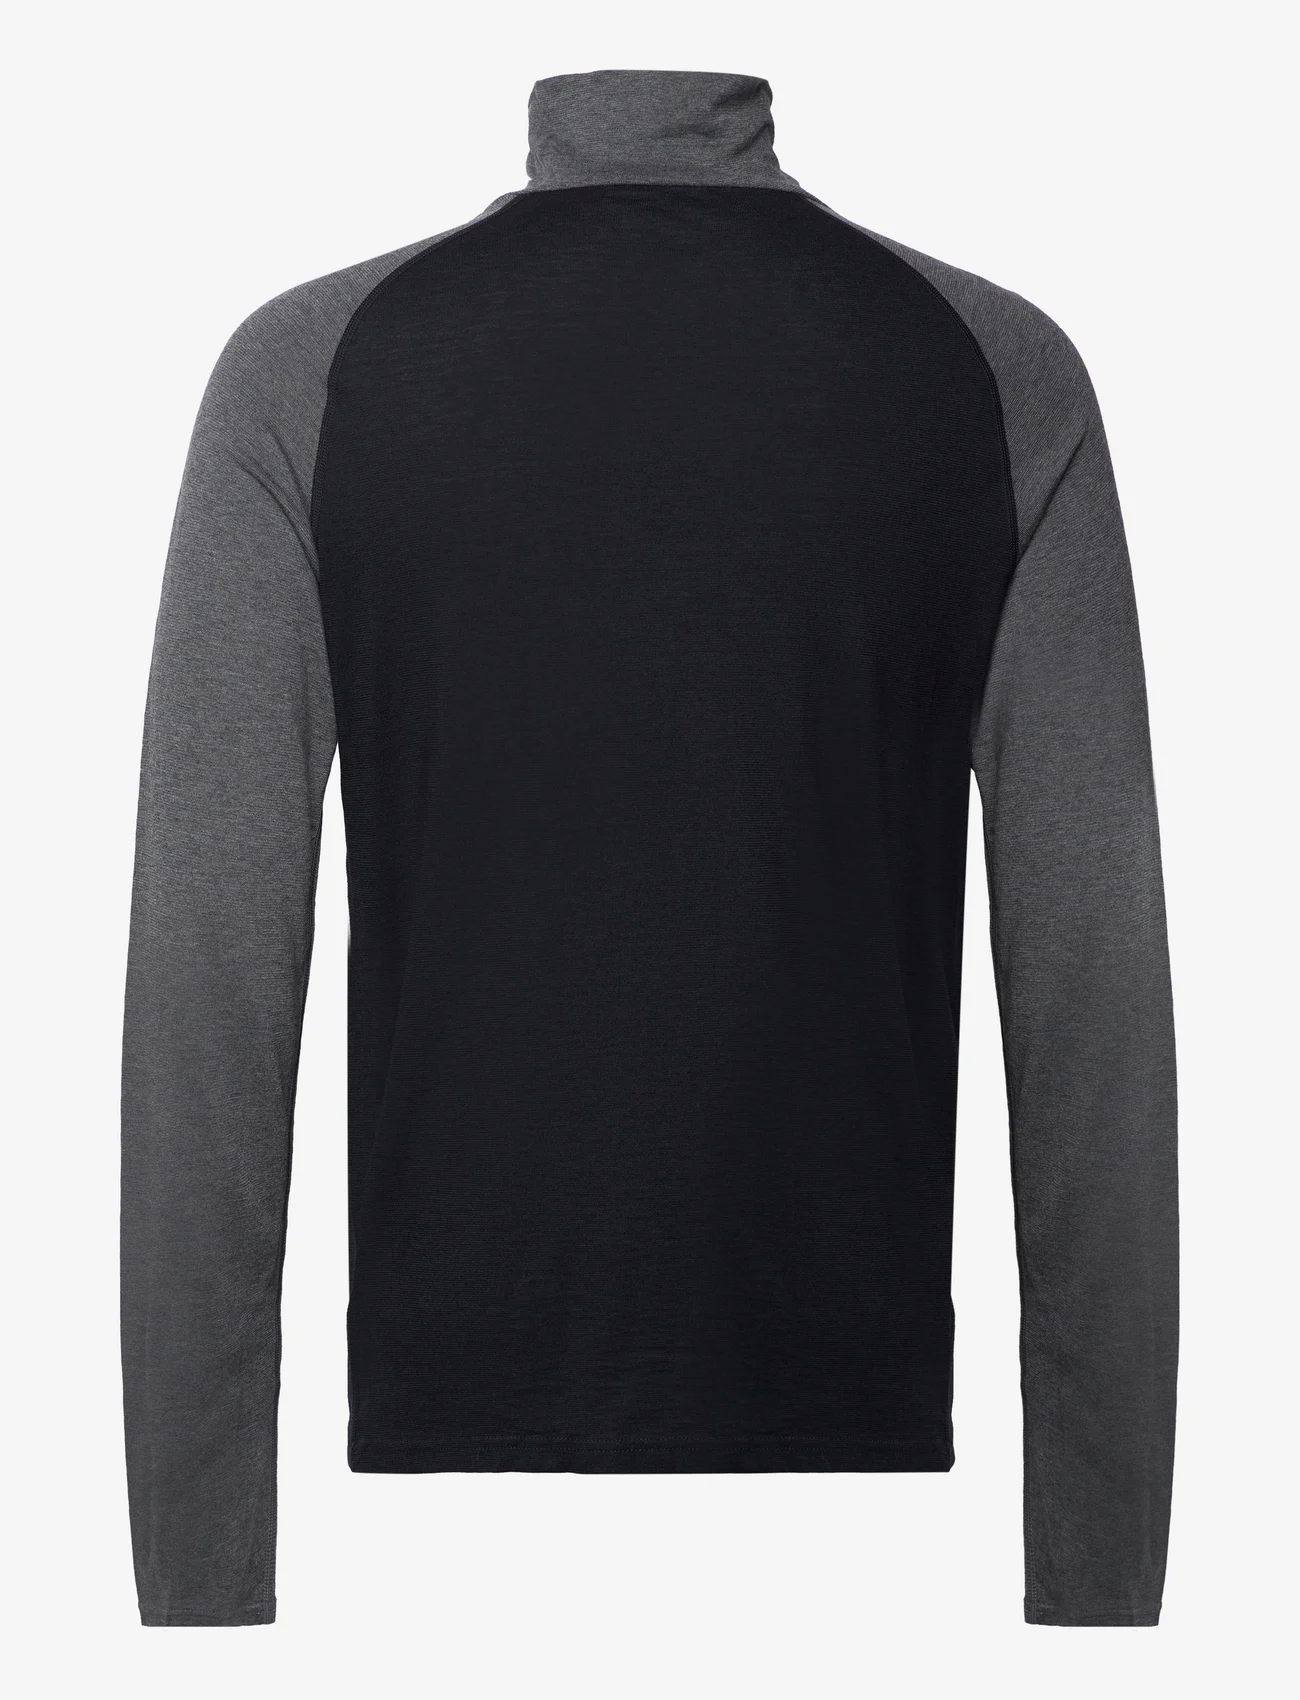 Bula - Retro Merino Wool Halfzip Sweater - vahekihina kantavad jakid - black - 1